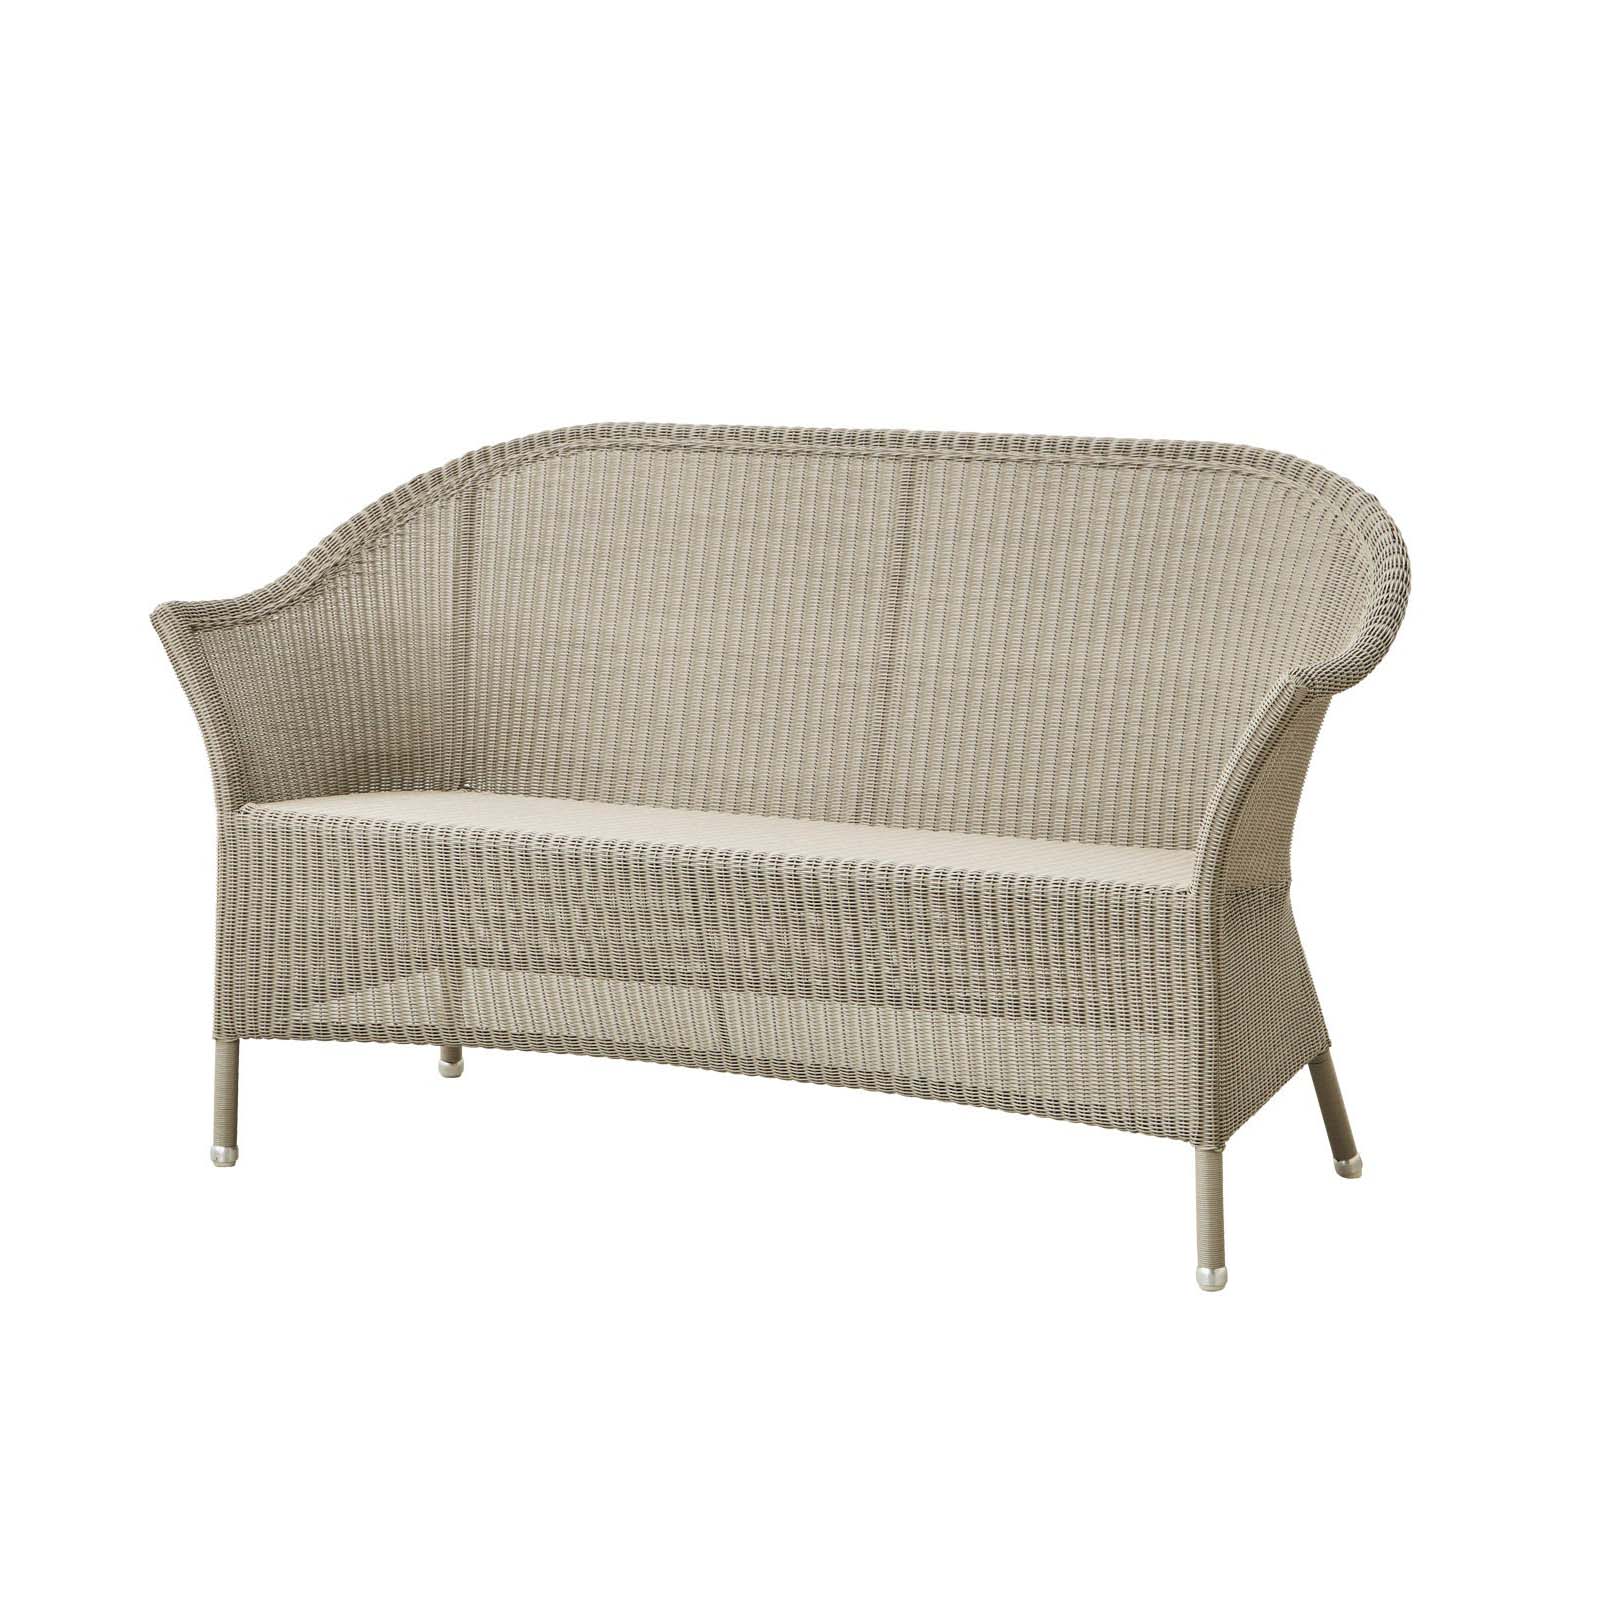 Lansing 2-Sitzer Sofa aus Cane-line Weave in Taupe mit Kissen aus Cane-line Natté in Light Grey